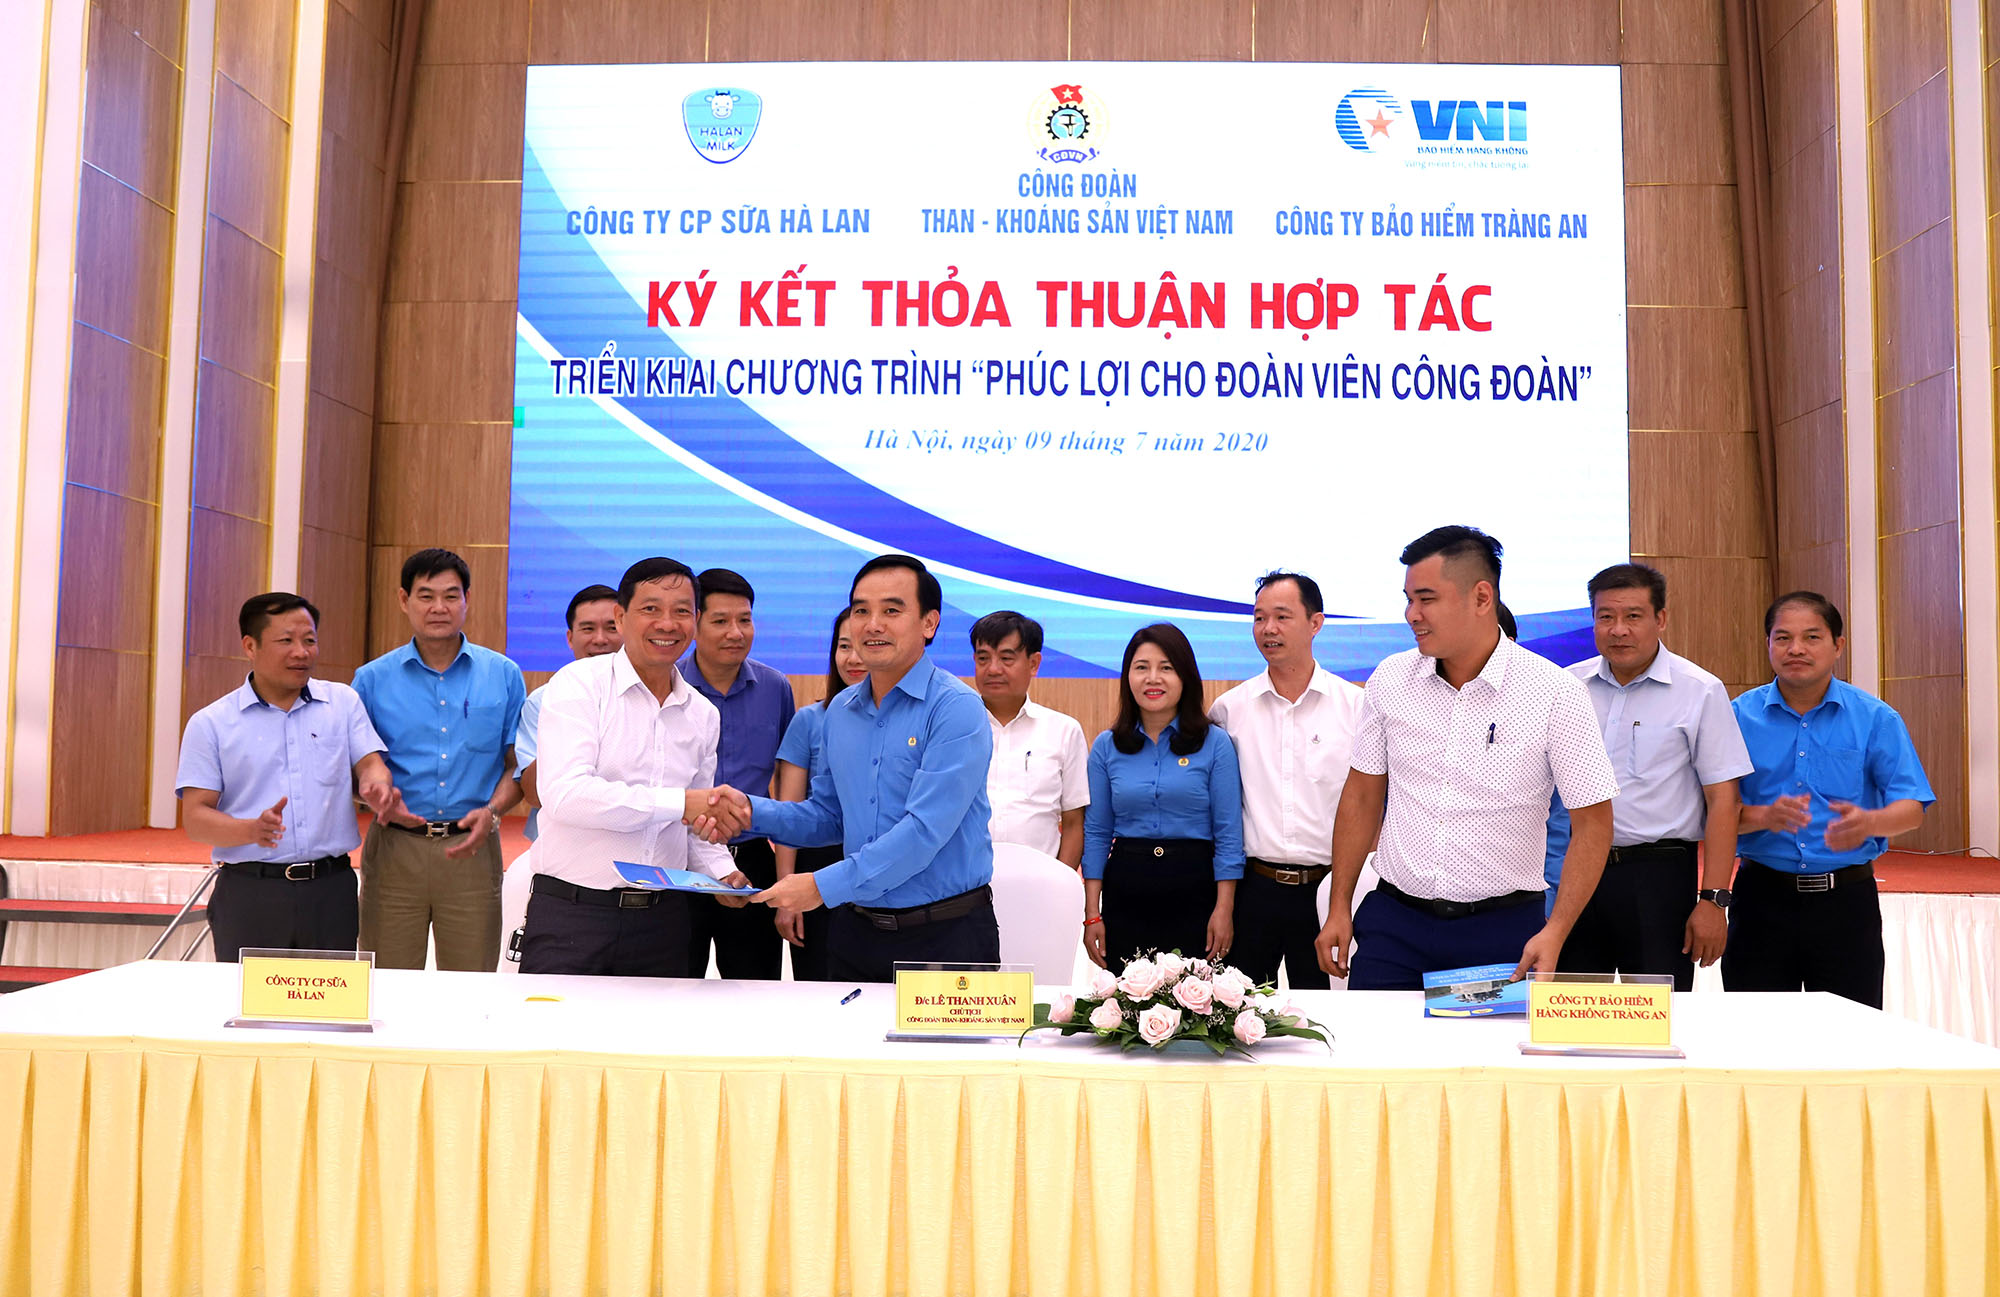 Công đoàn TKV và các doanh nghiệp ký kết thỏa thuận hợp tác triển khai chương trình 